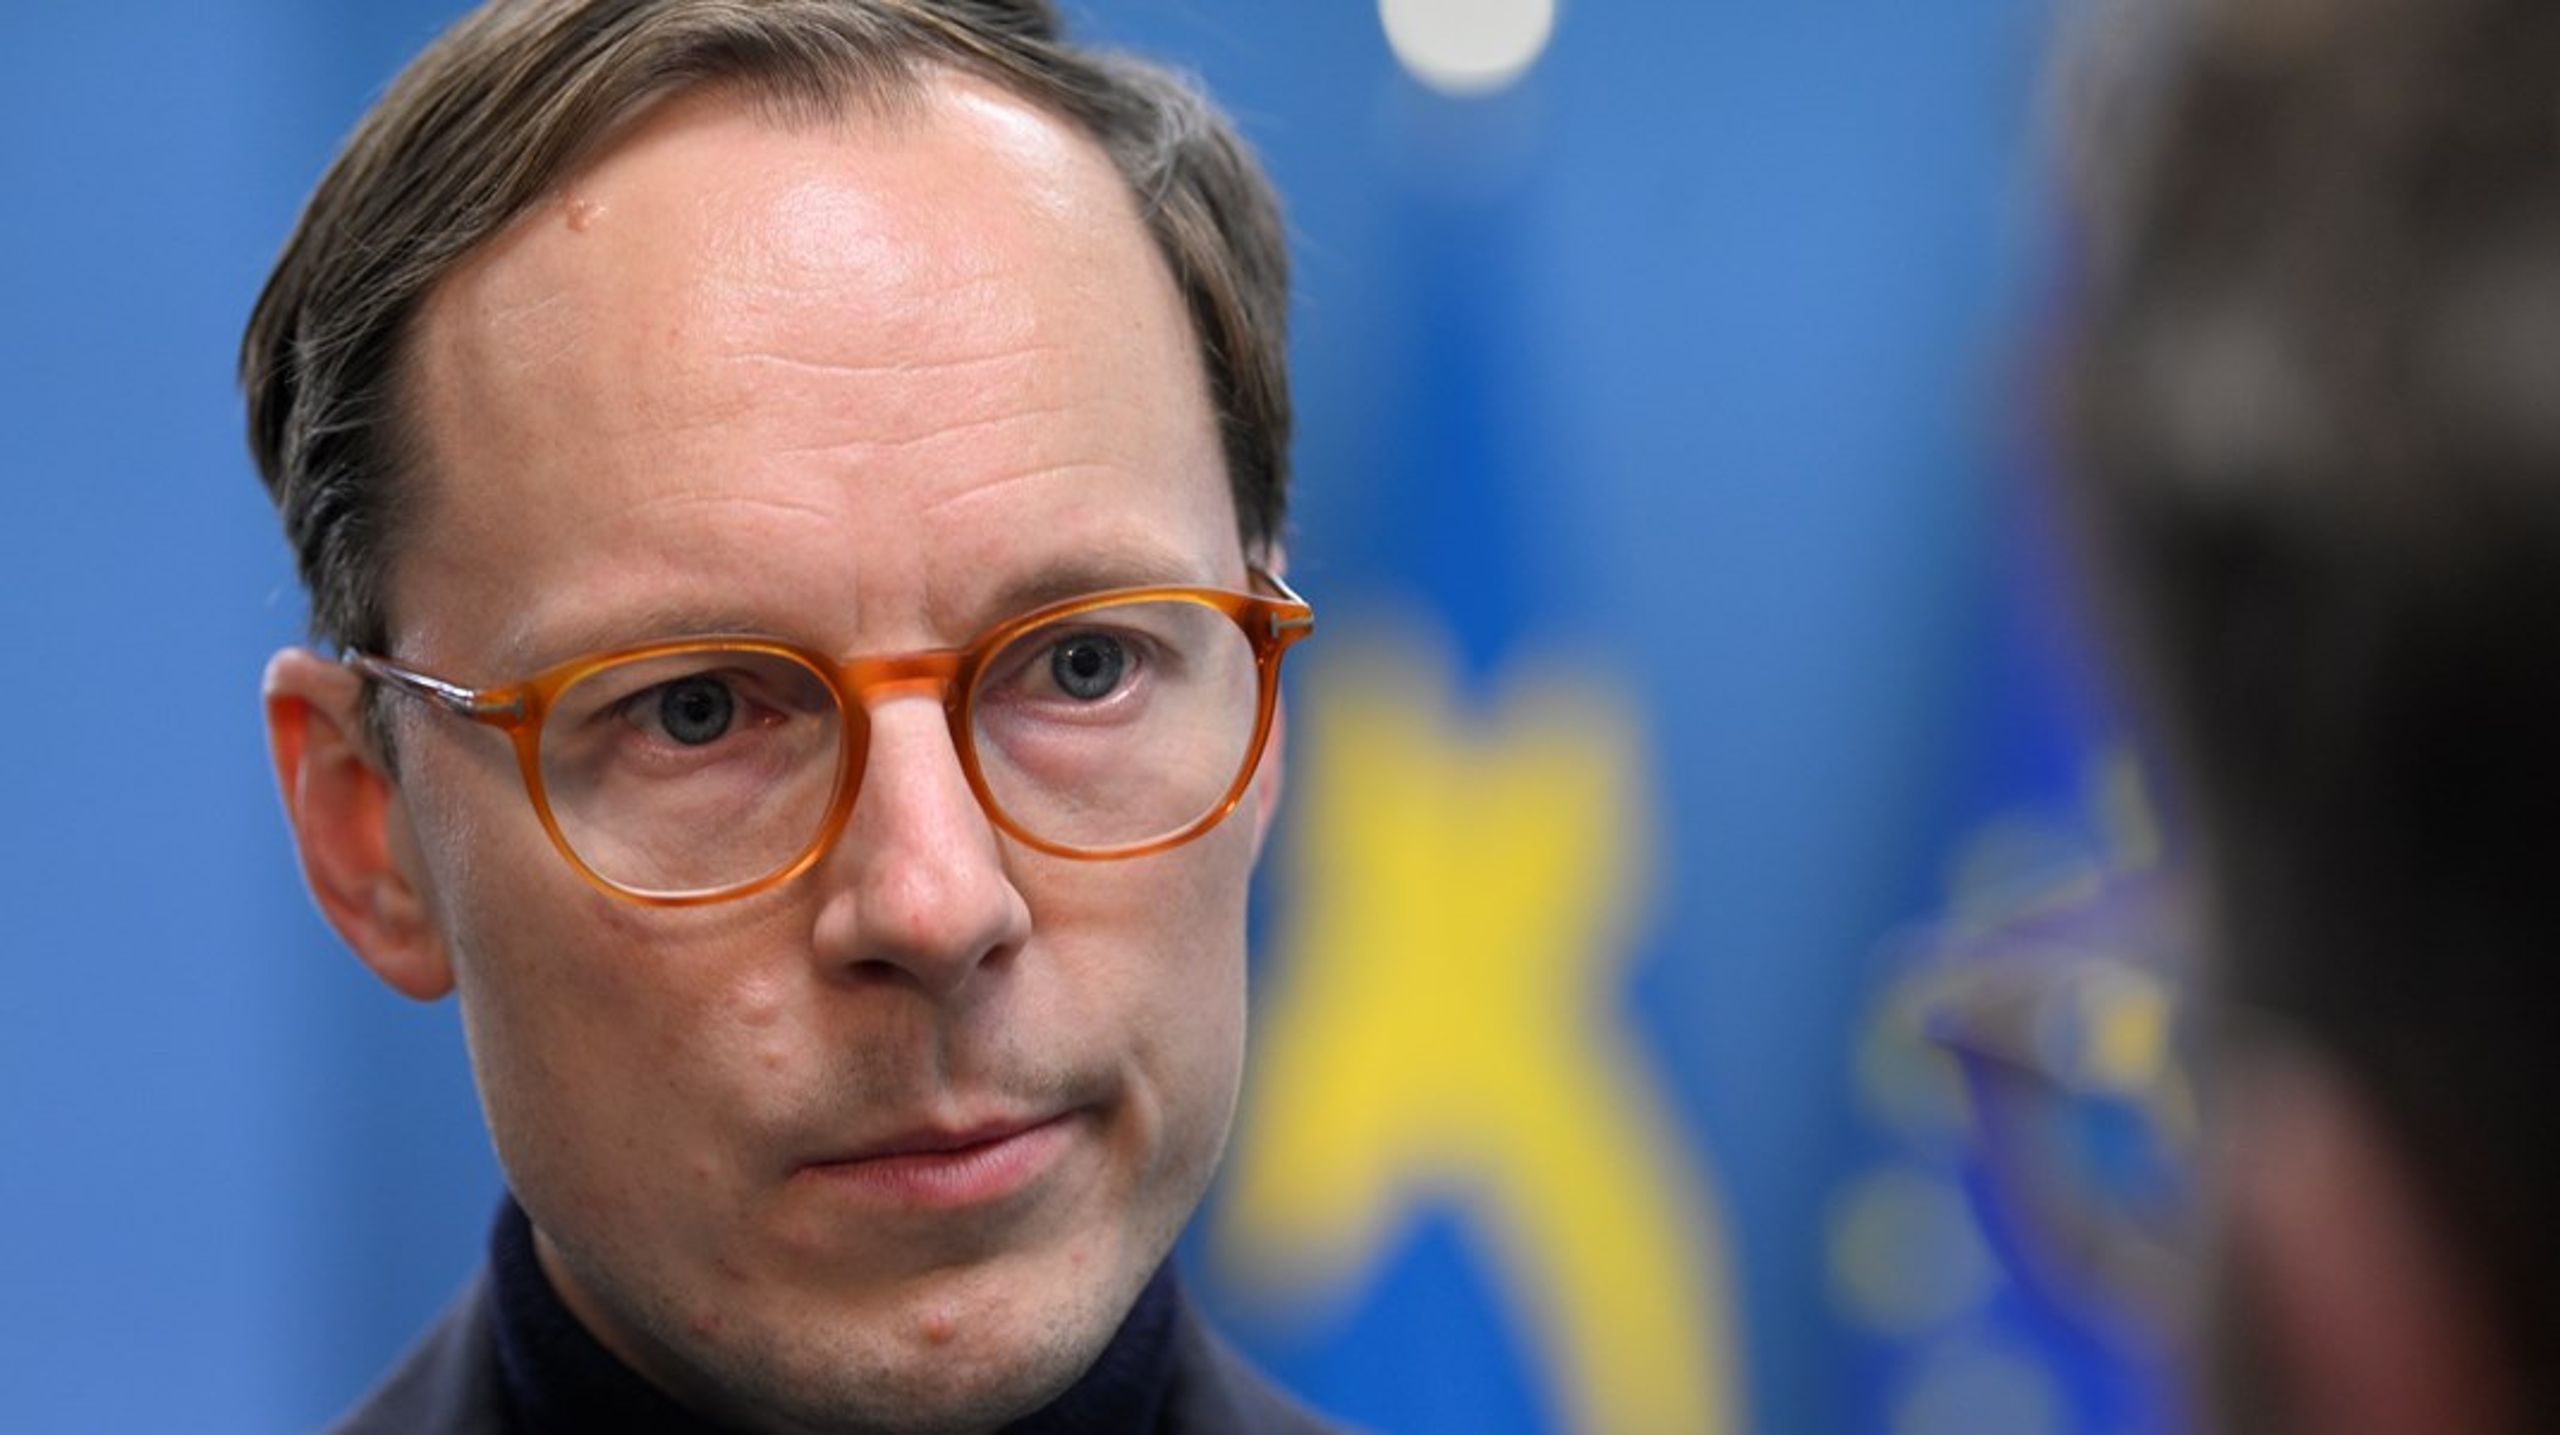 Utbildningsminister Mats Persson (L) verkar inte vilja förbättra situationen&nbsp;för landets studenter, menar debattören.